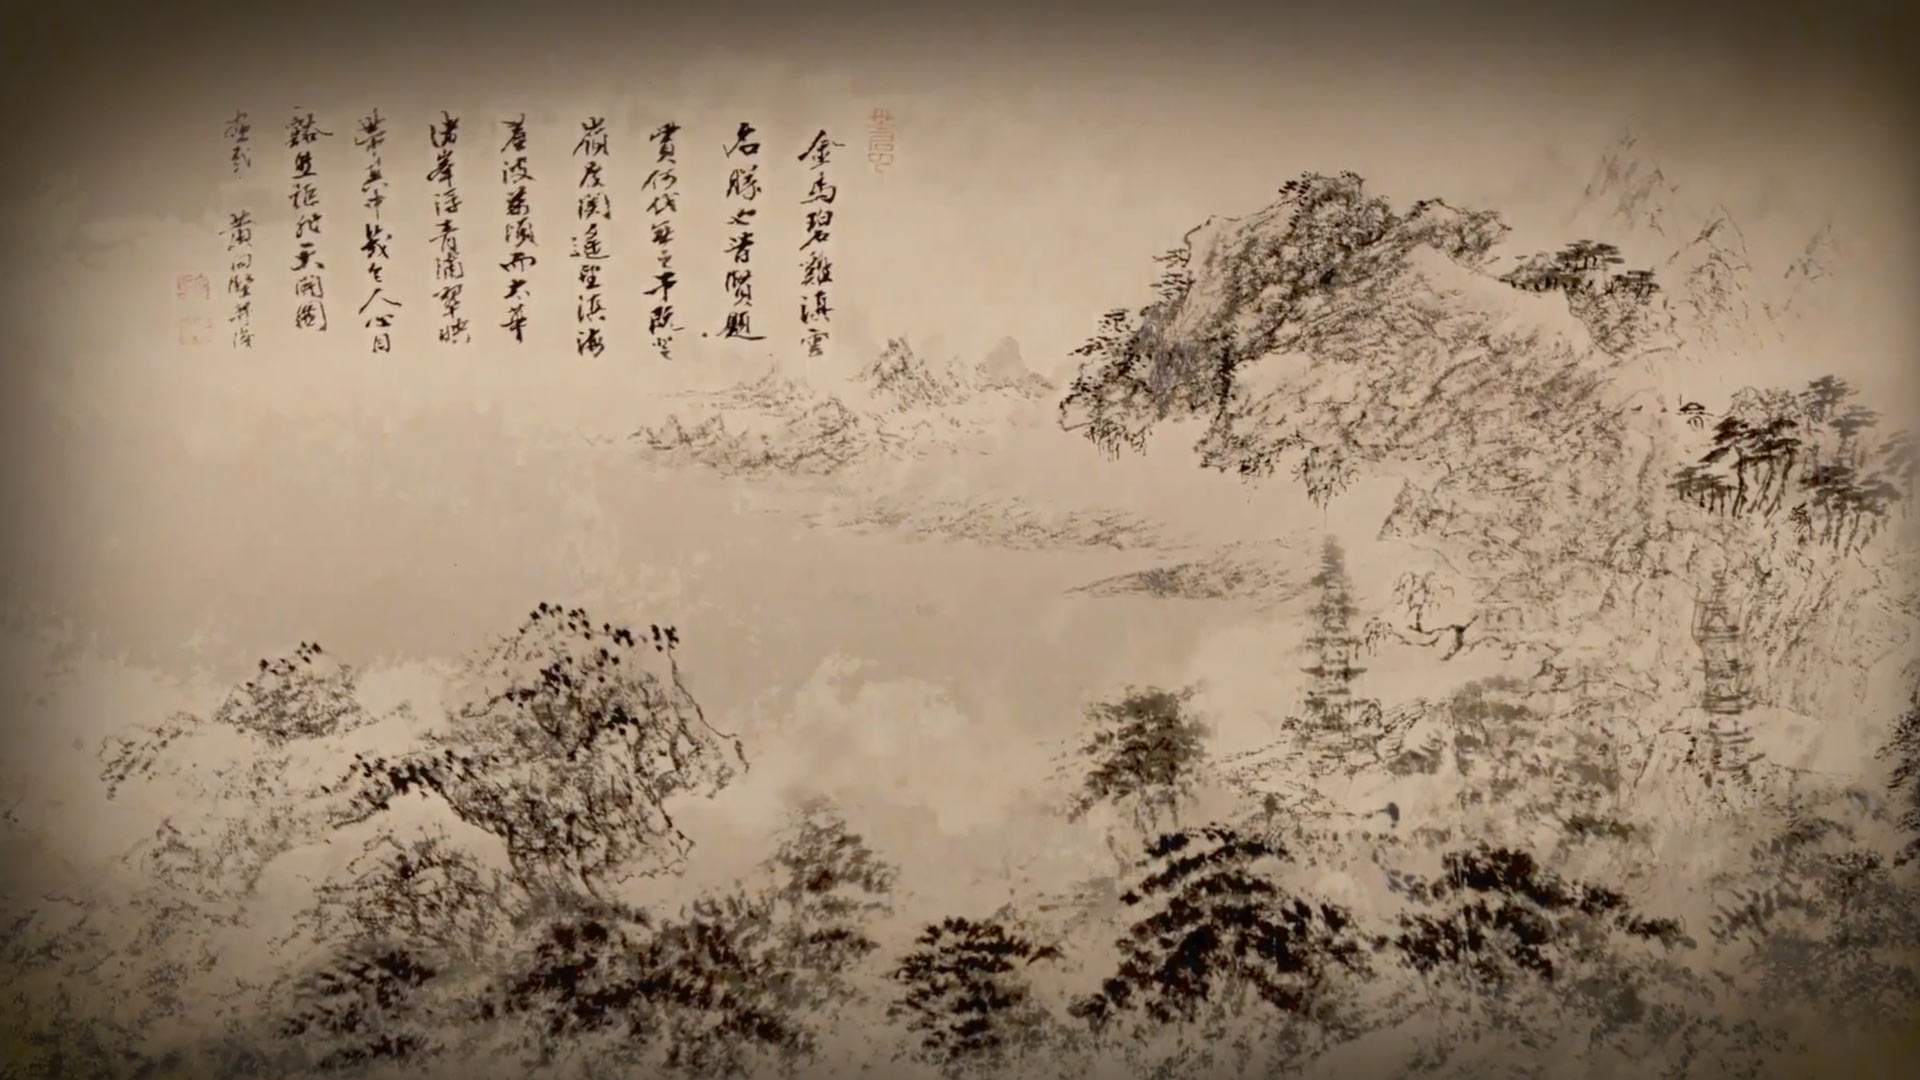 出处:《呼吸美学－中国古画赏析》: 万水千山总是情(2021年)